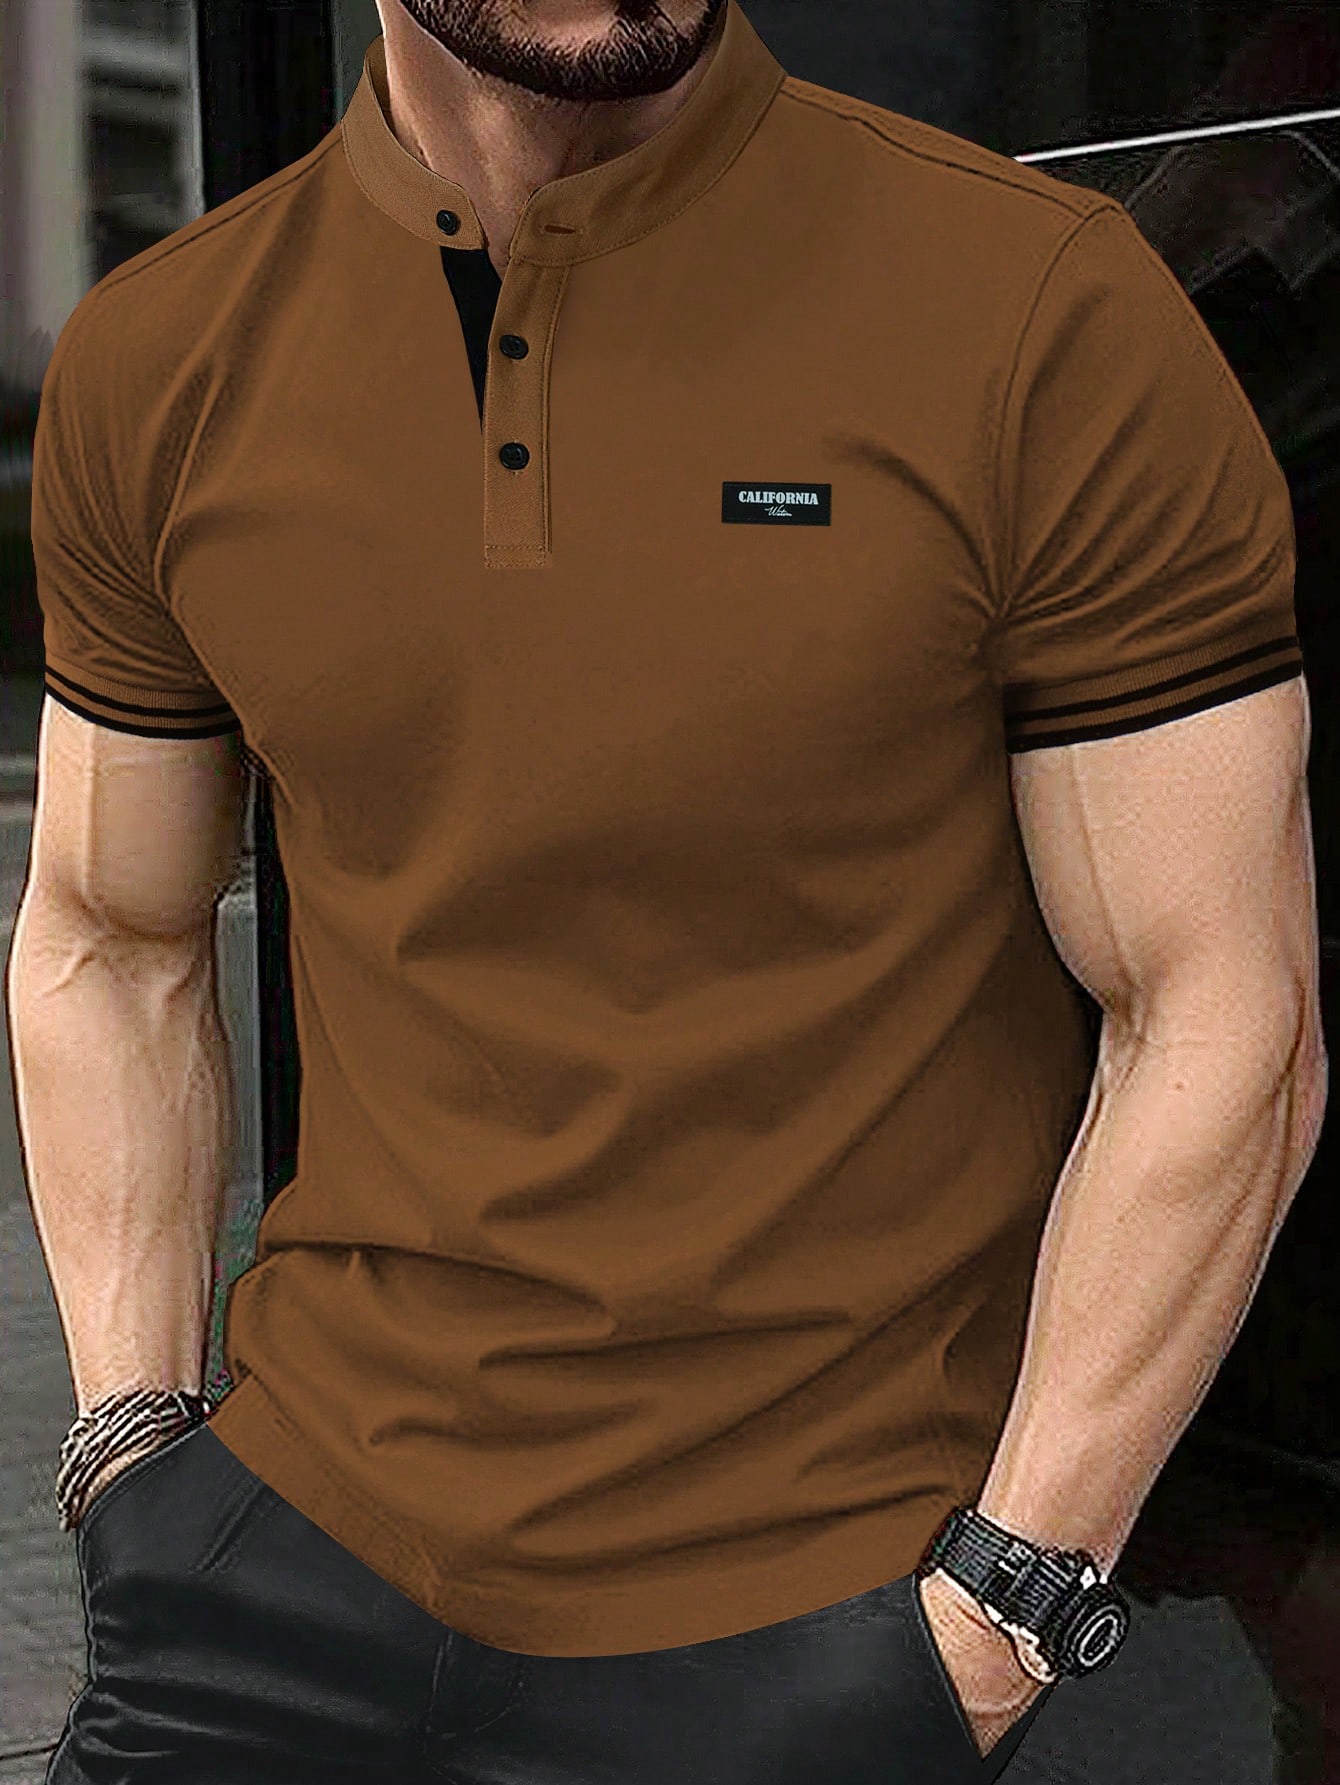 Мужская рубашка-поло с коротким рукавом и планкой на пуговицах Manfinity Homme, коричневый мужская летняя однотонная рубашка с воротником стойкой и короткими рукавами